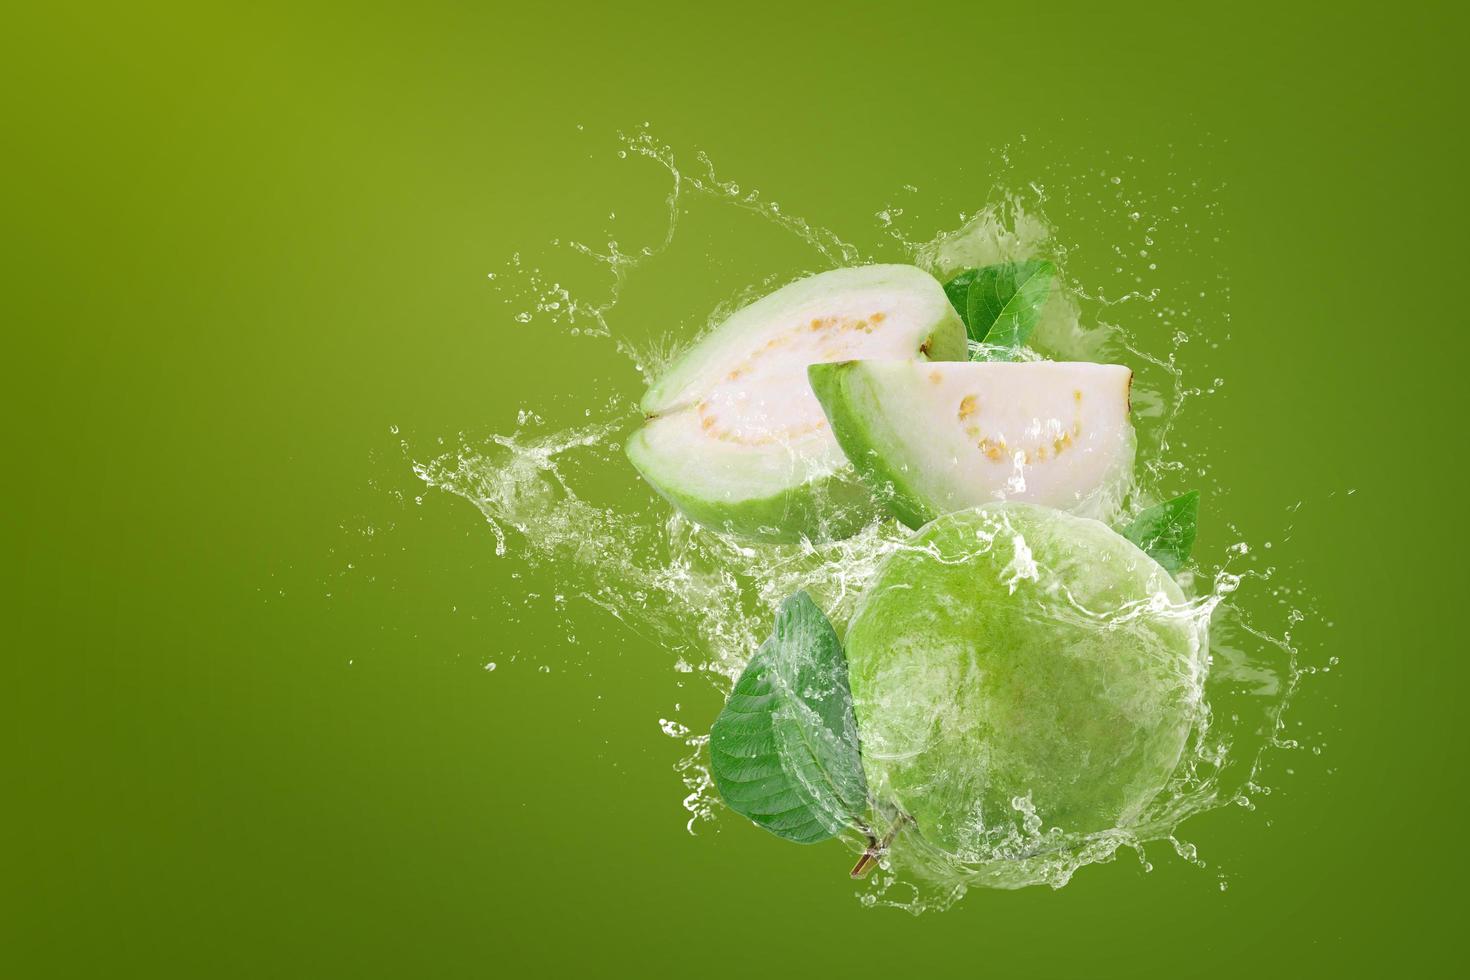 Wasser spritzt auf grüne Guavenfrucht foto